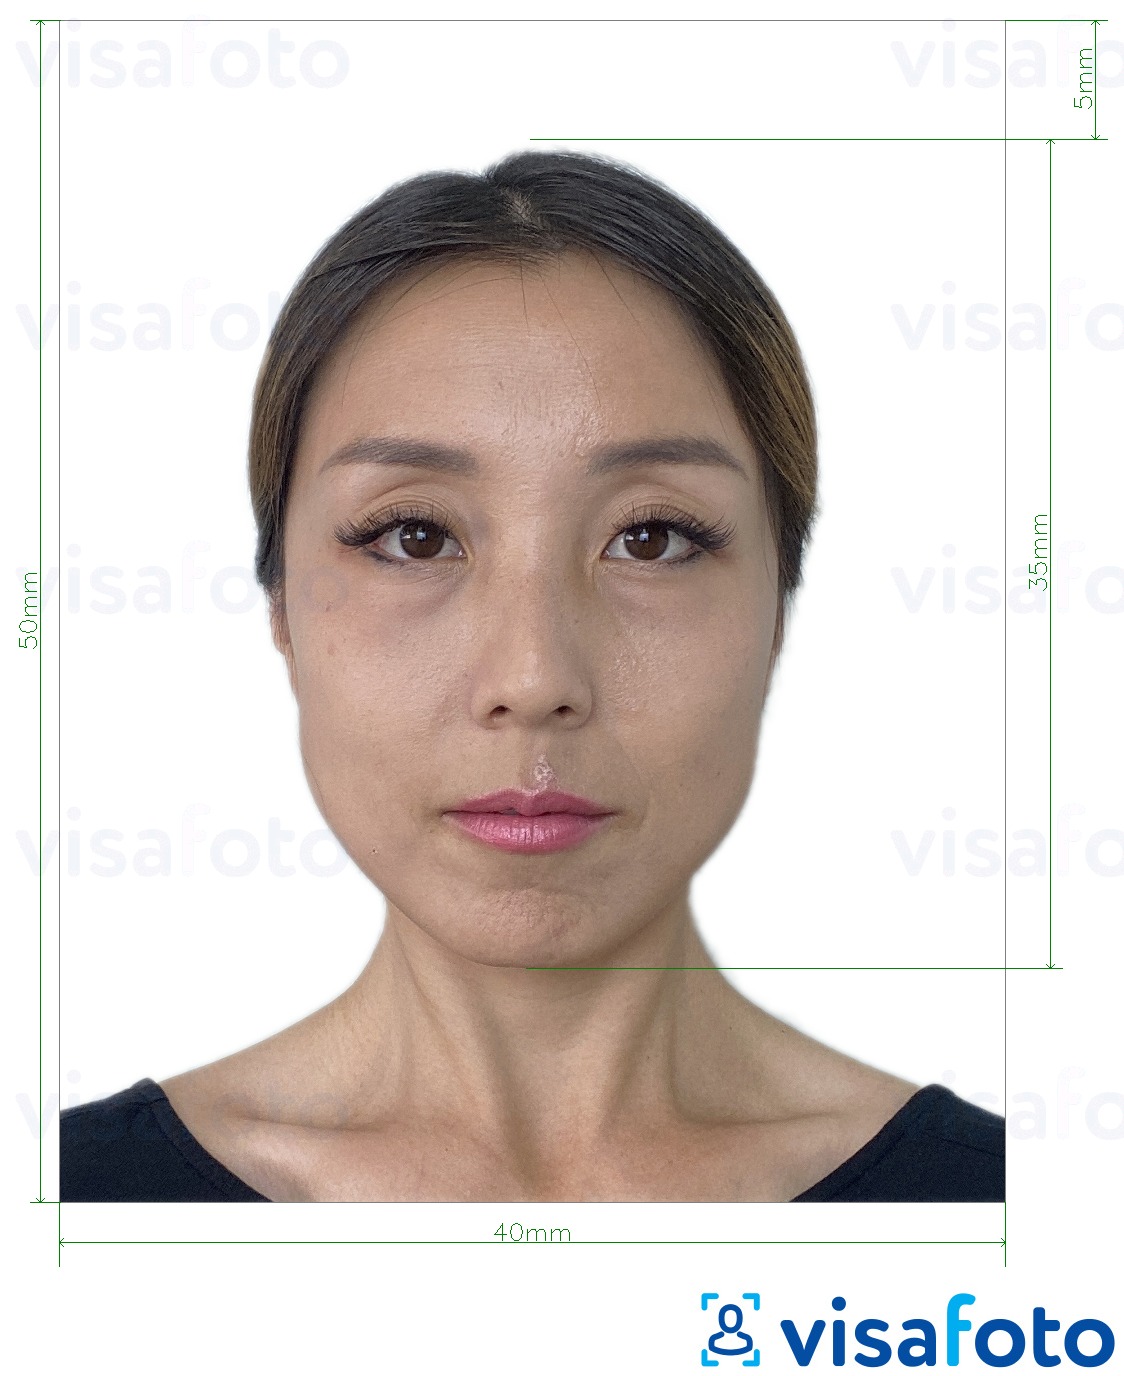 Fotobeispiel für Hongkong Ausweis 4x5 cm mit genauer größenangabe